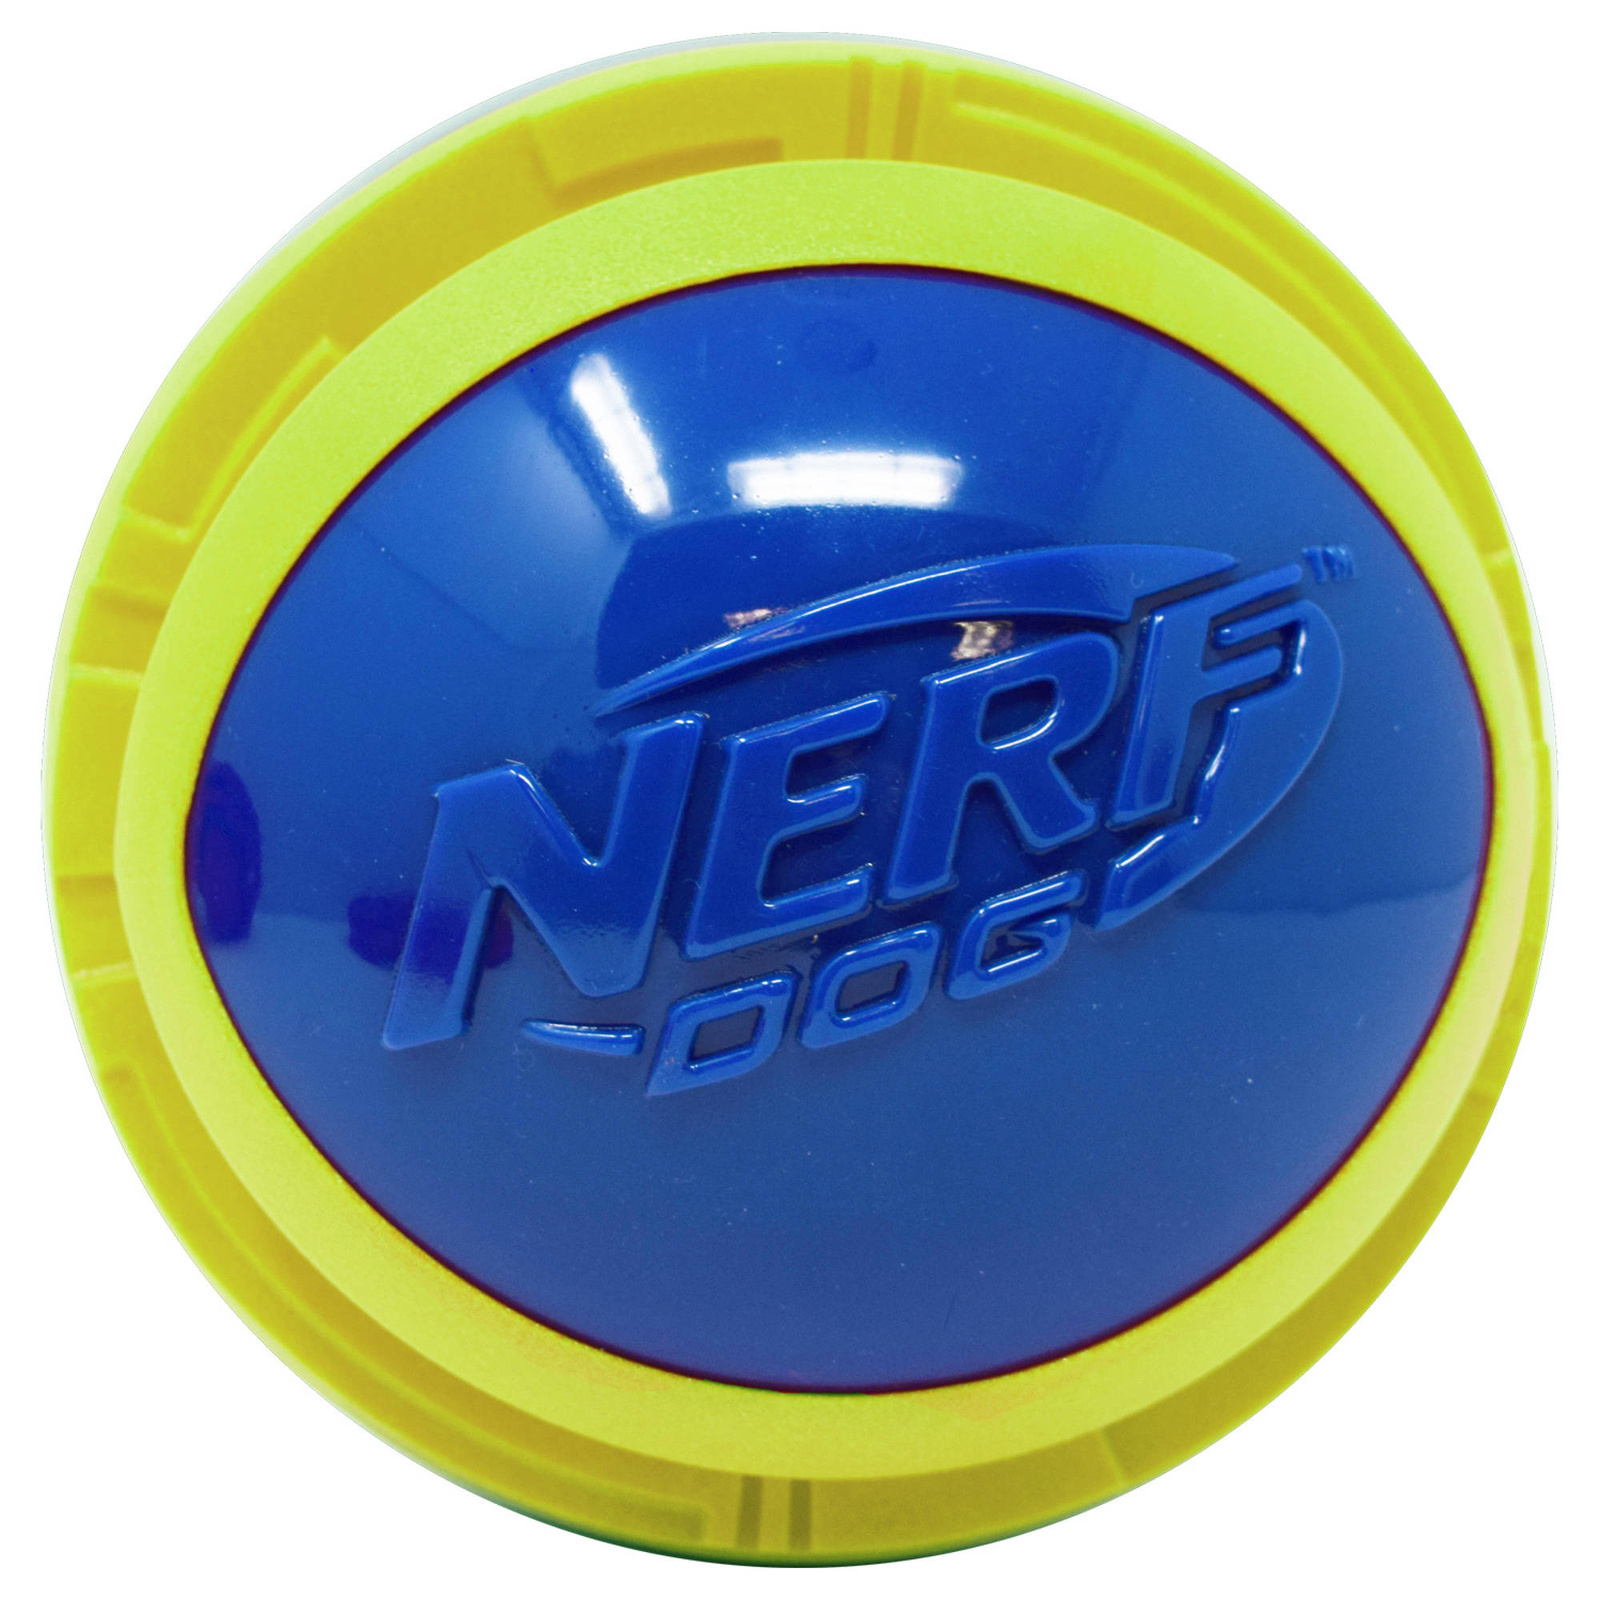 Nerf Nerf мяч из вспененной резины и термопластичной резины,14 см (серия Мегатон), (синий/зеленый) (390 г) nerf dog мяч для регби из термопластичной резины 18 см серия мегатон синий оранжевый